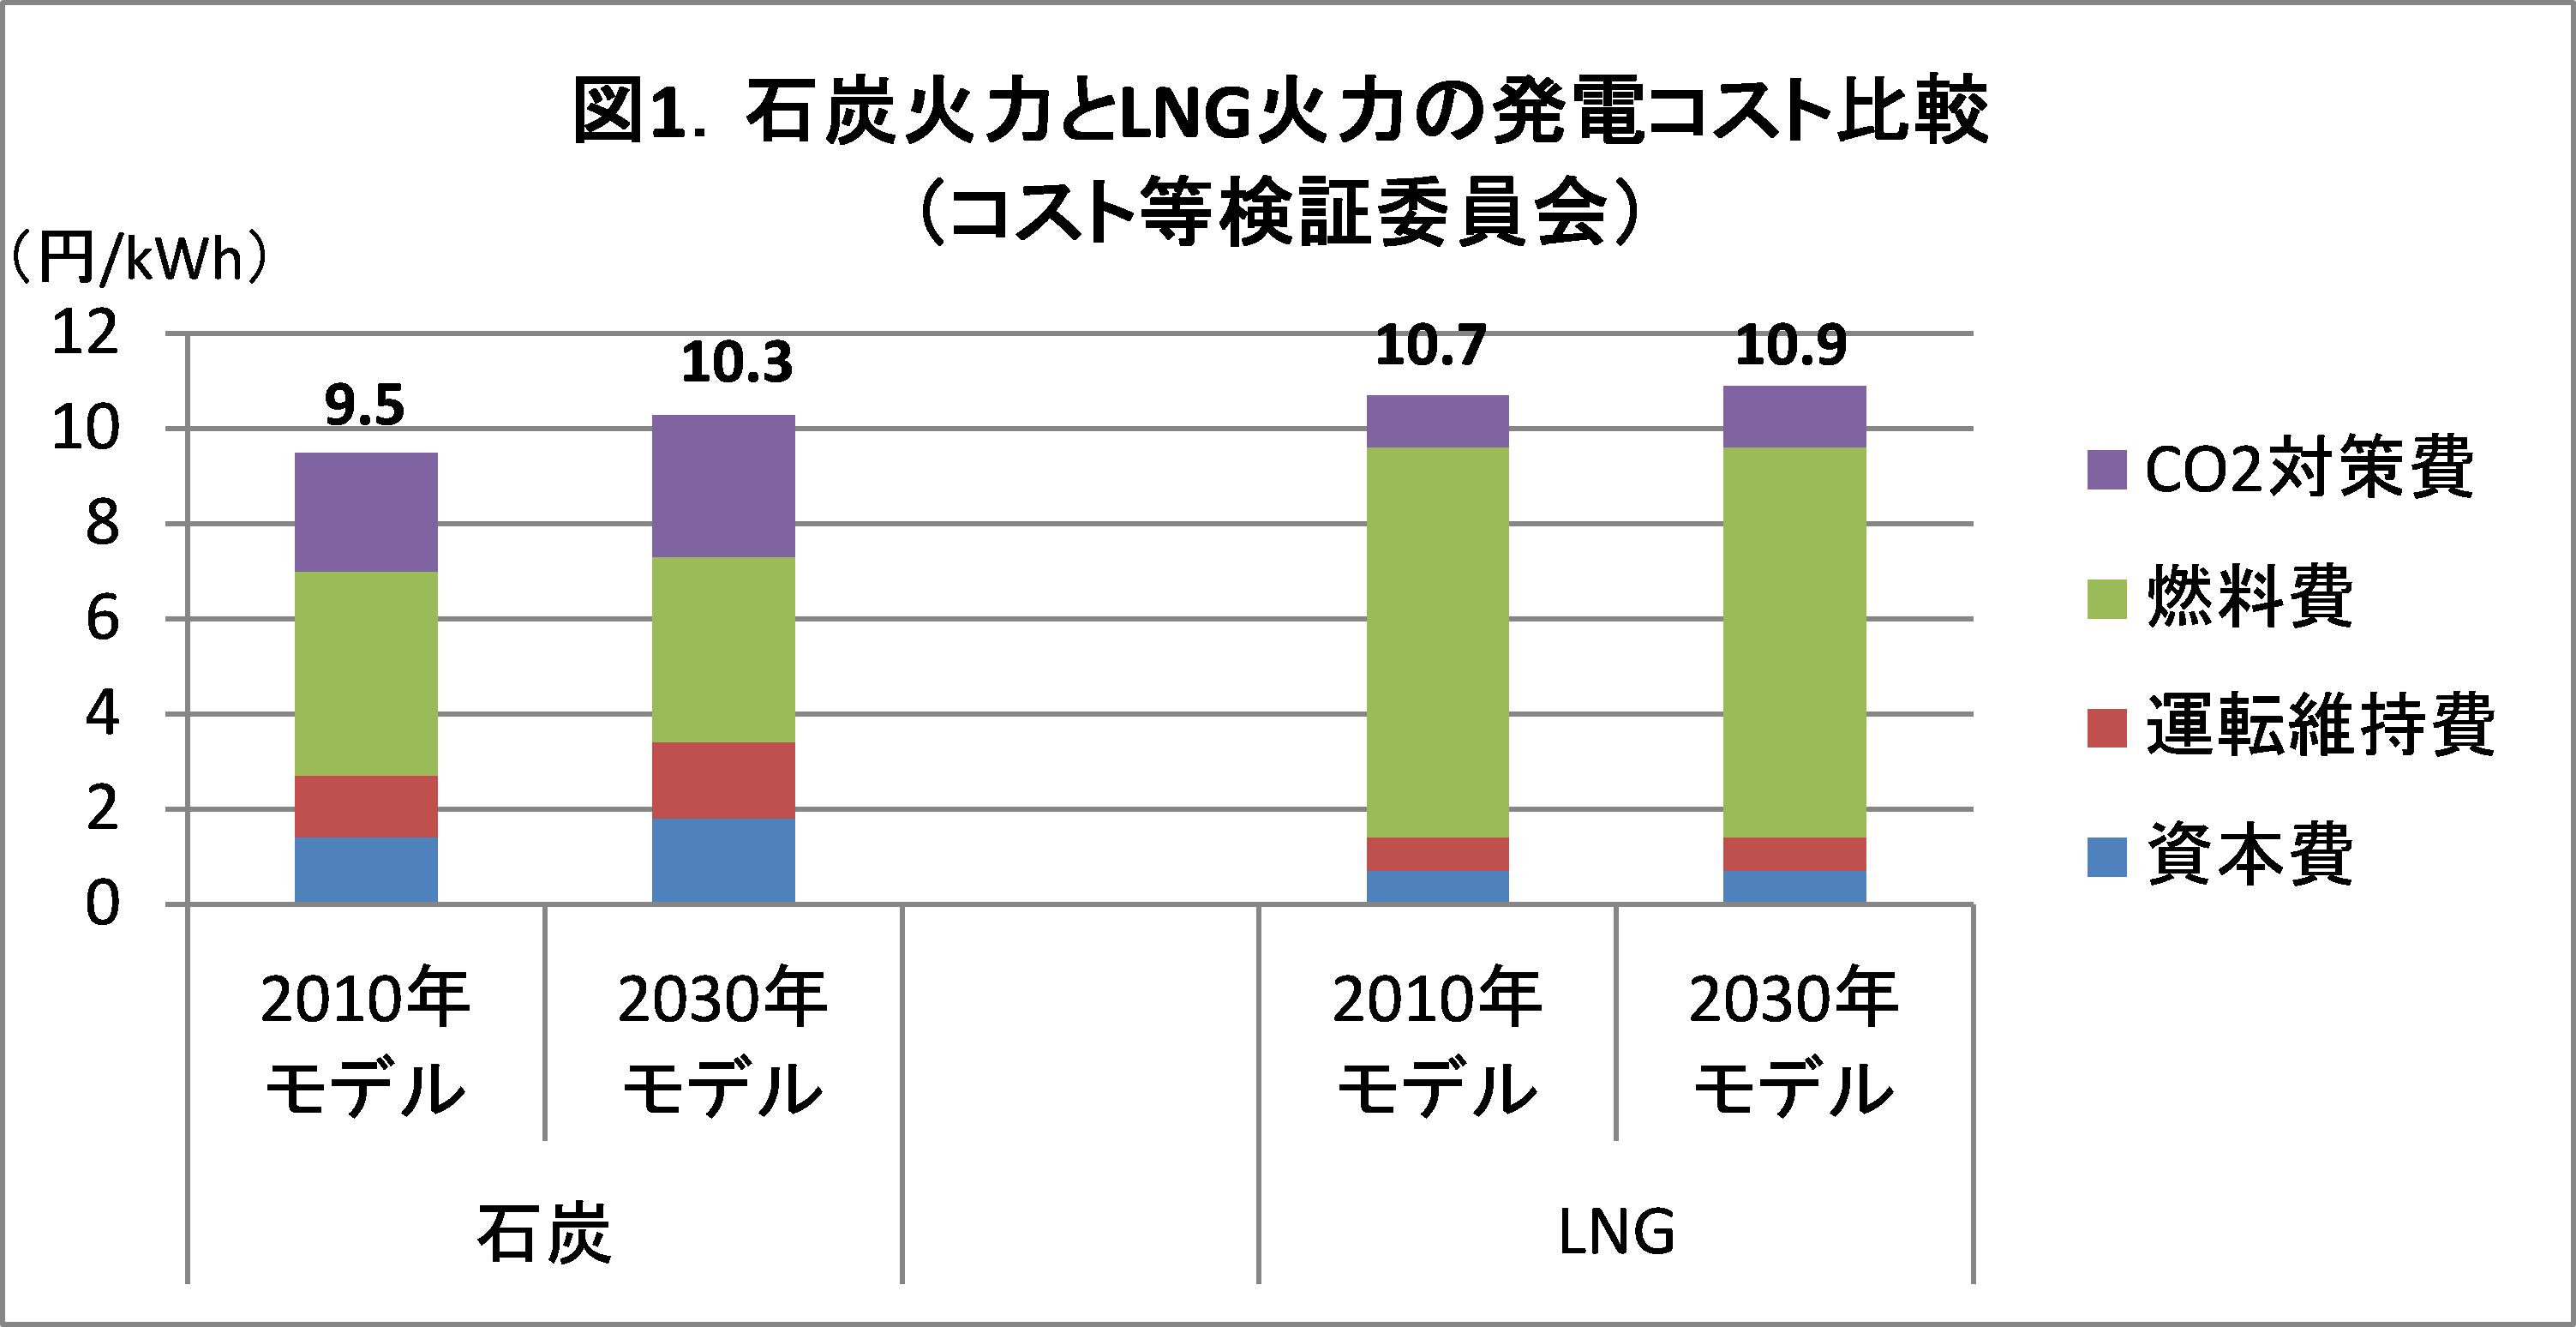 石炭火力は本当に安いのか 政府報告書より Japan Beyond Coal 石炭火力発電所を30年までにゼロに